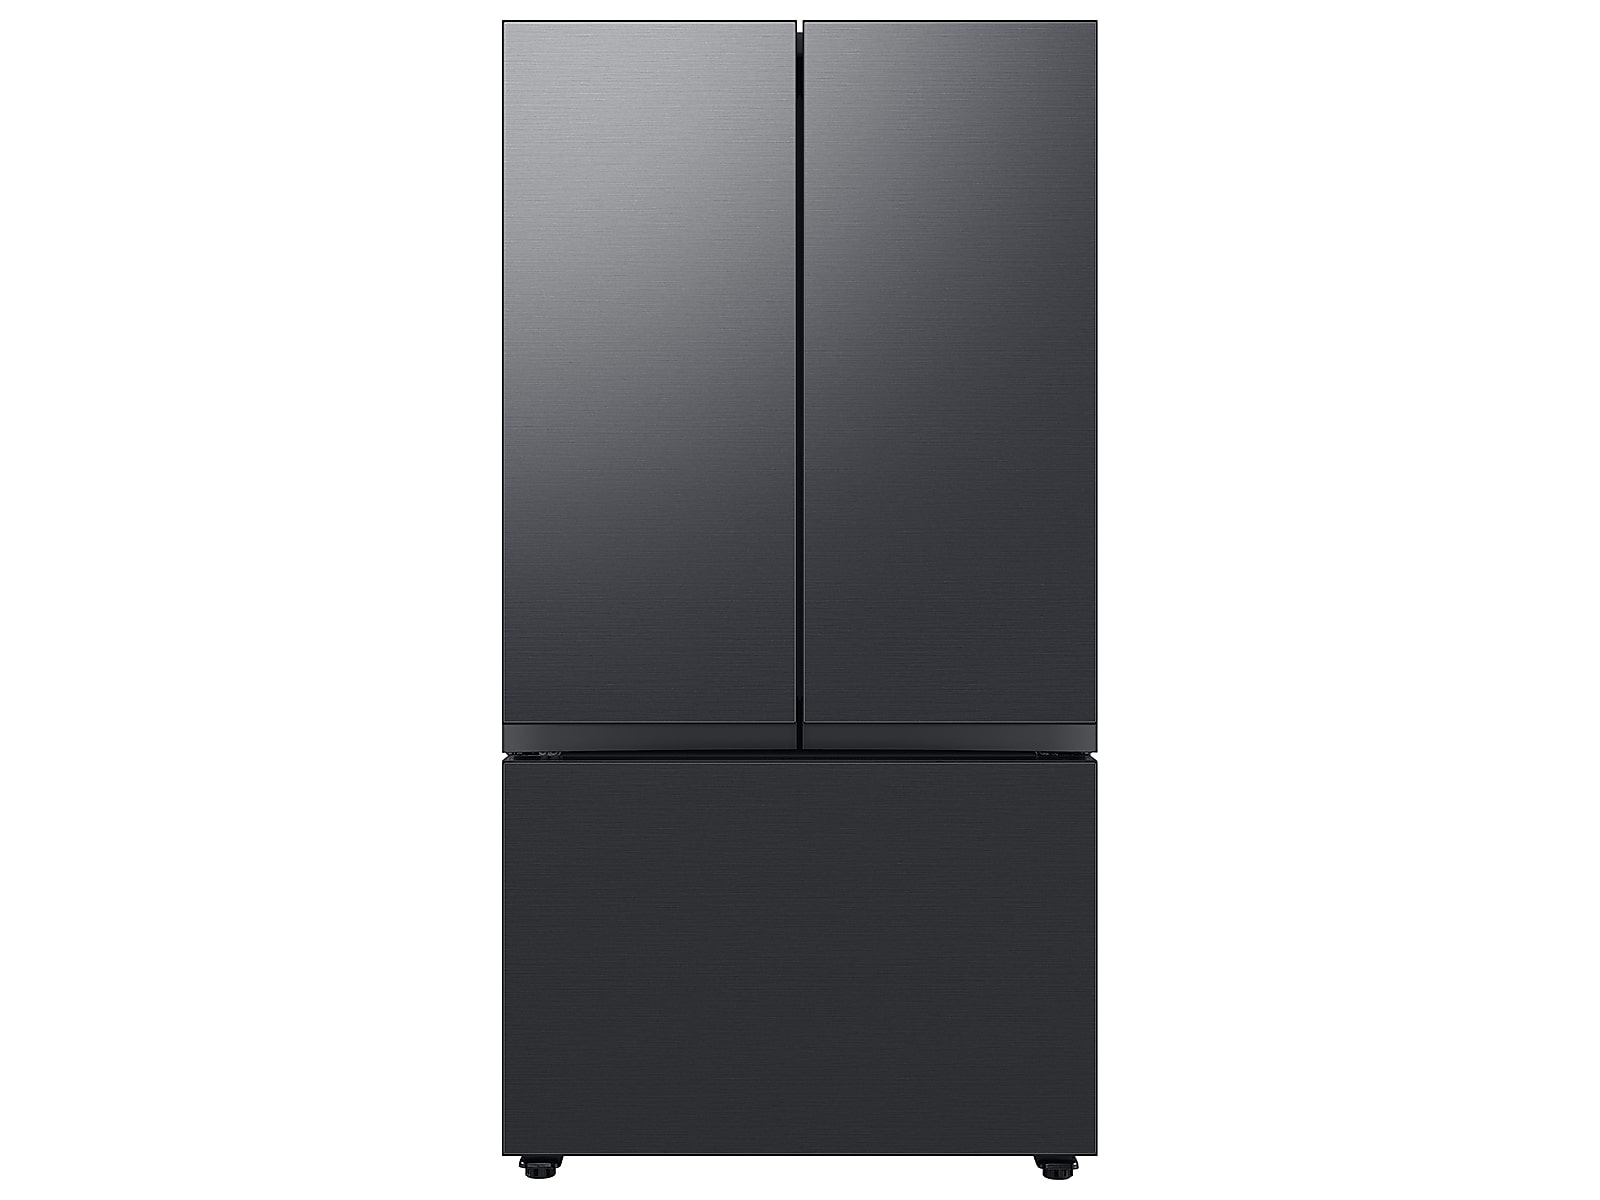 Samsung Bespoke 3-Door French Door Refrigerator (24 cu. ft.) with Beverage Center™ in Matte in Black Steel(BNDL-1650311111843)